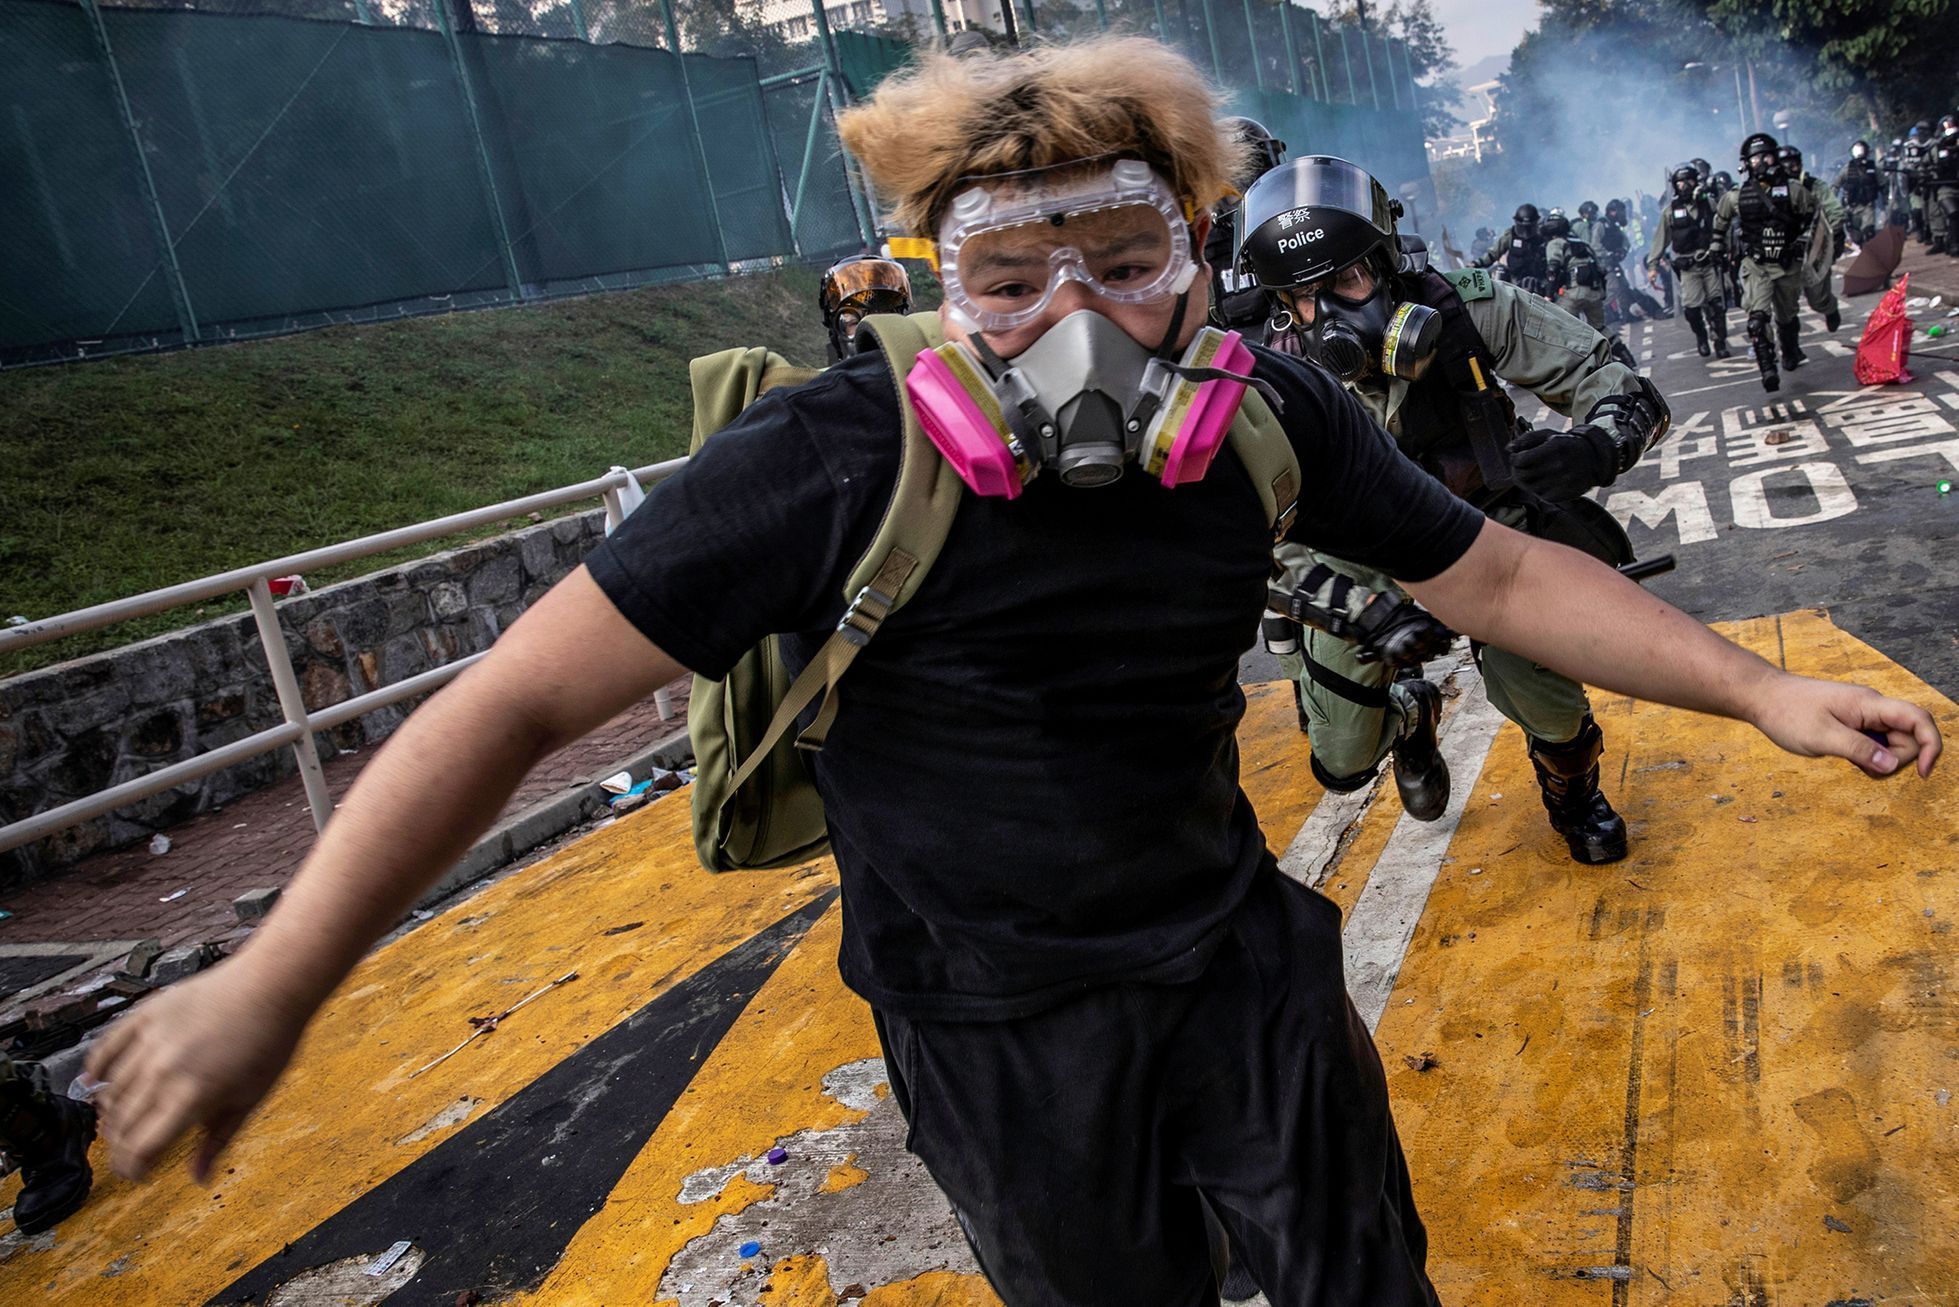 Obazem: Snímky z protestů v Hongkongu přinesly fotoreportérovi agentury Reuters prestižní Pulitzerovu cenu